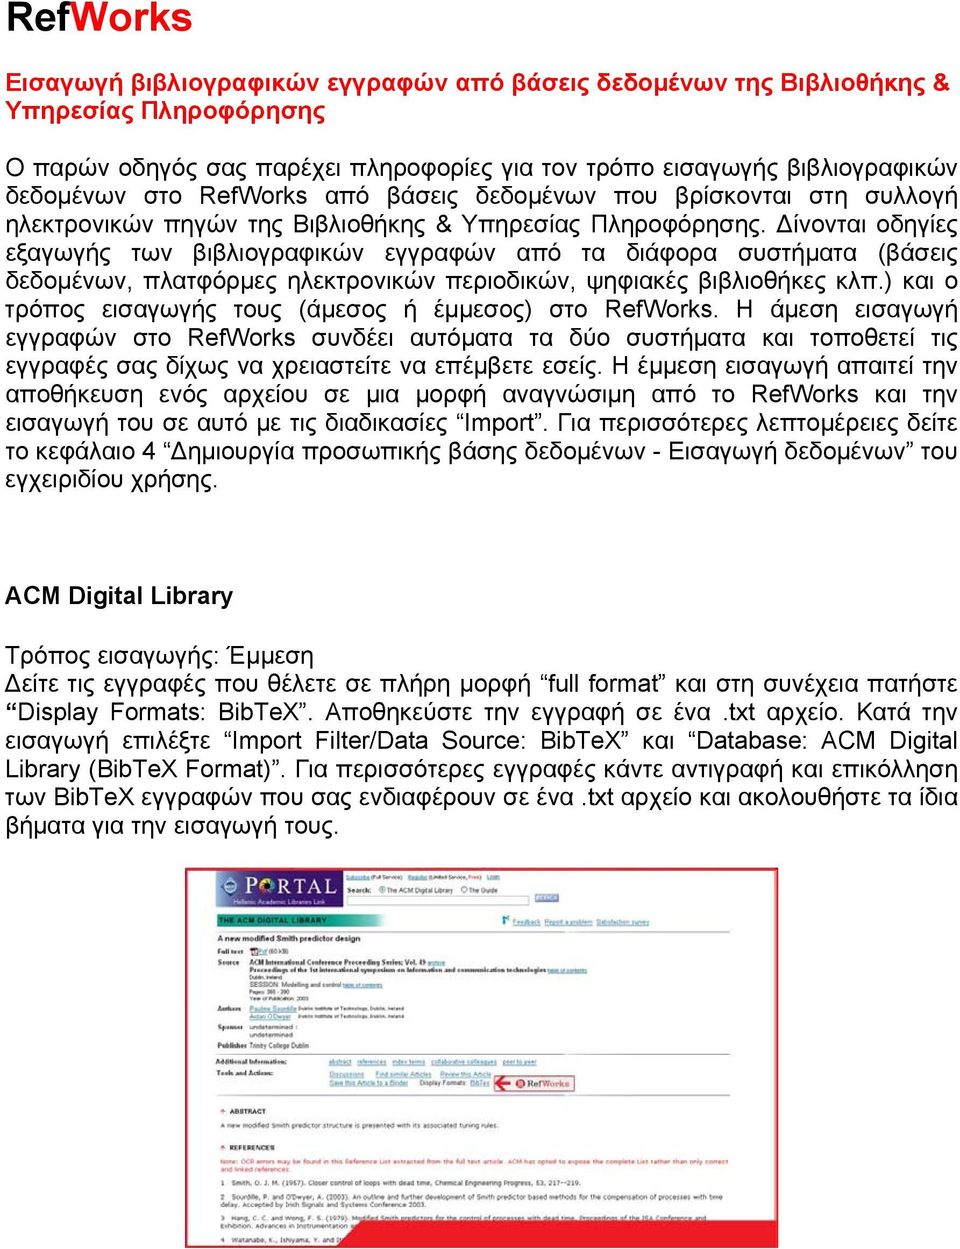 Δίνονται οδηγίες εξαγωγής των βιβλιογραφικών εγγραφών από τα διάφορα συστήματα (βάσεις δεδομένων, πλατφόρμες ηλεκτρονικών περιοδικών, ψηφιακές βιβλιοθήκες κλπ.